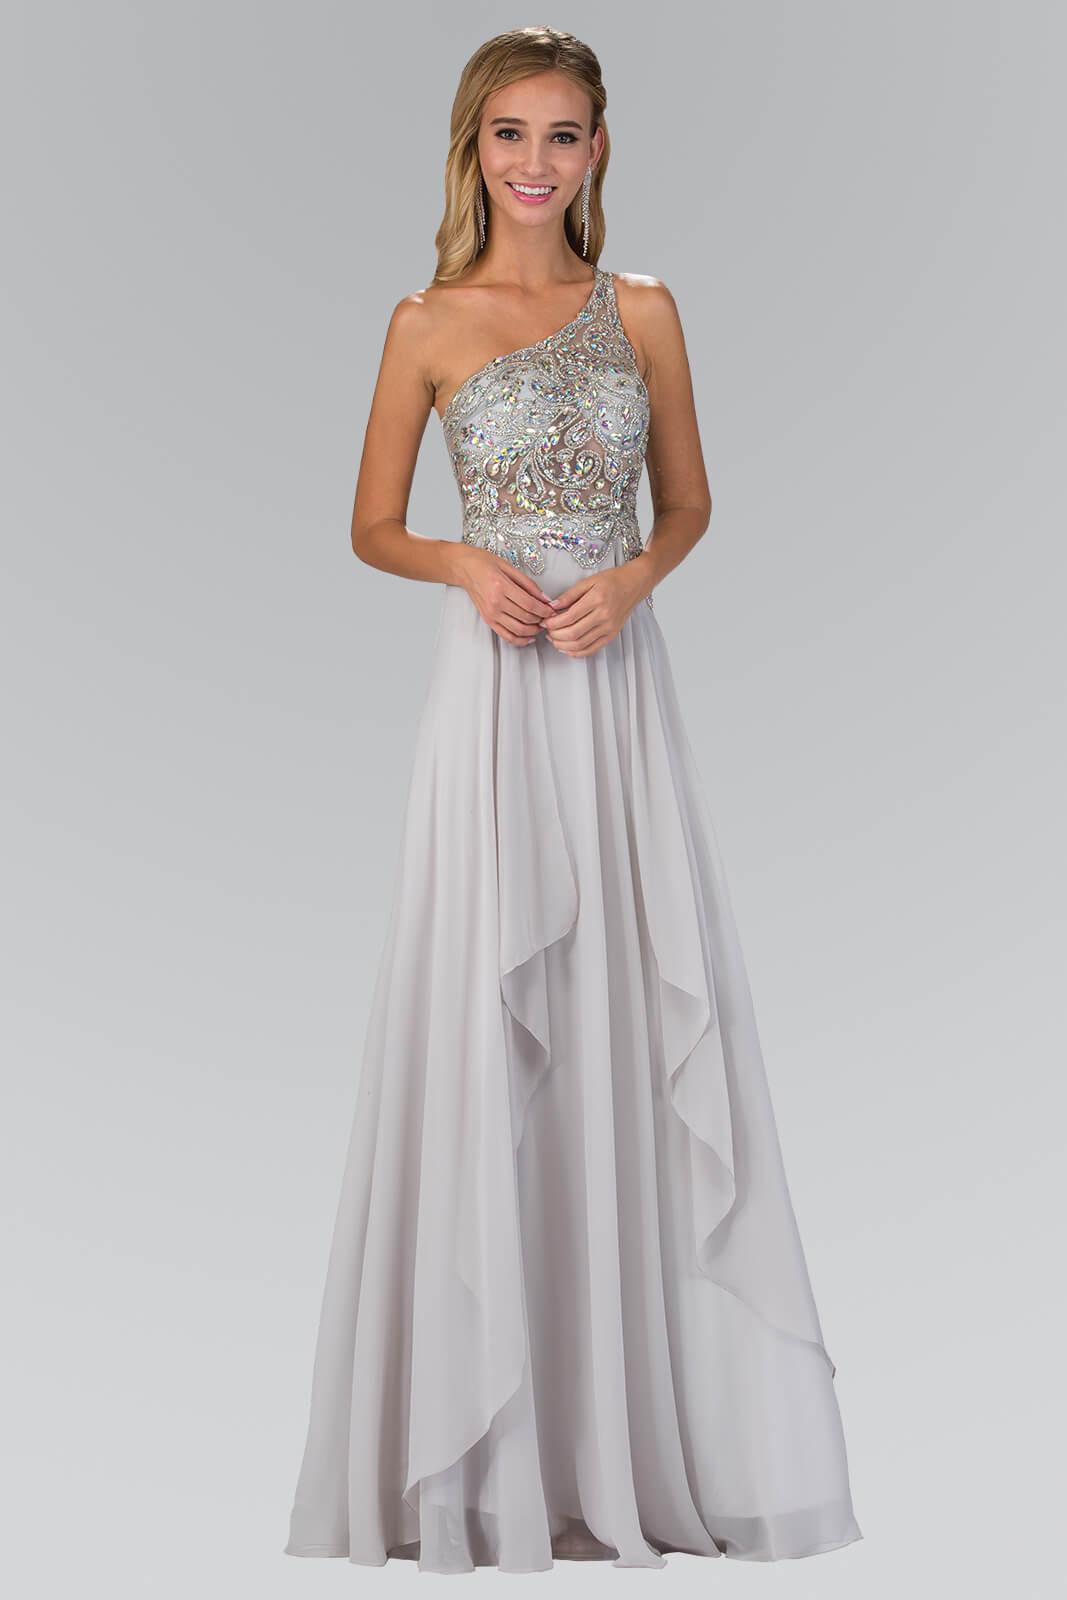 One Shoulder Chiffon Long Prom Dress Formal - The Dress Outlet Elizabeth K